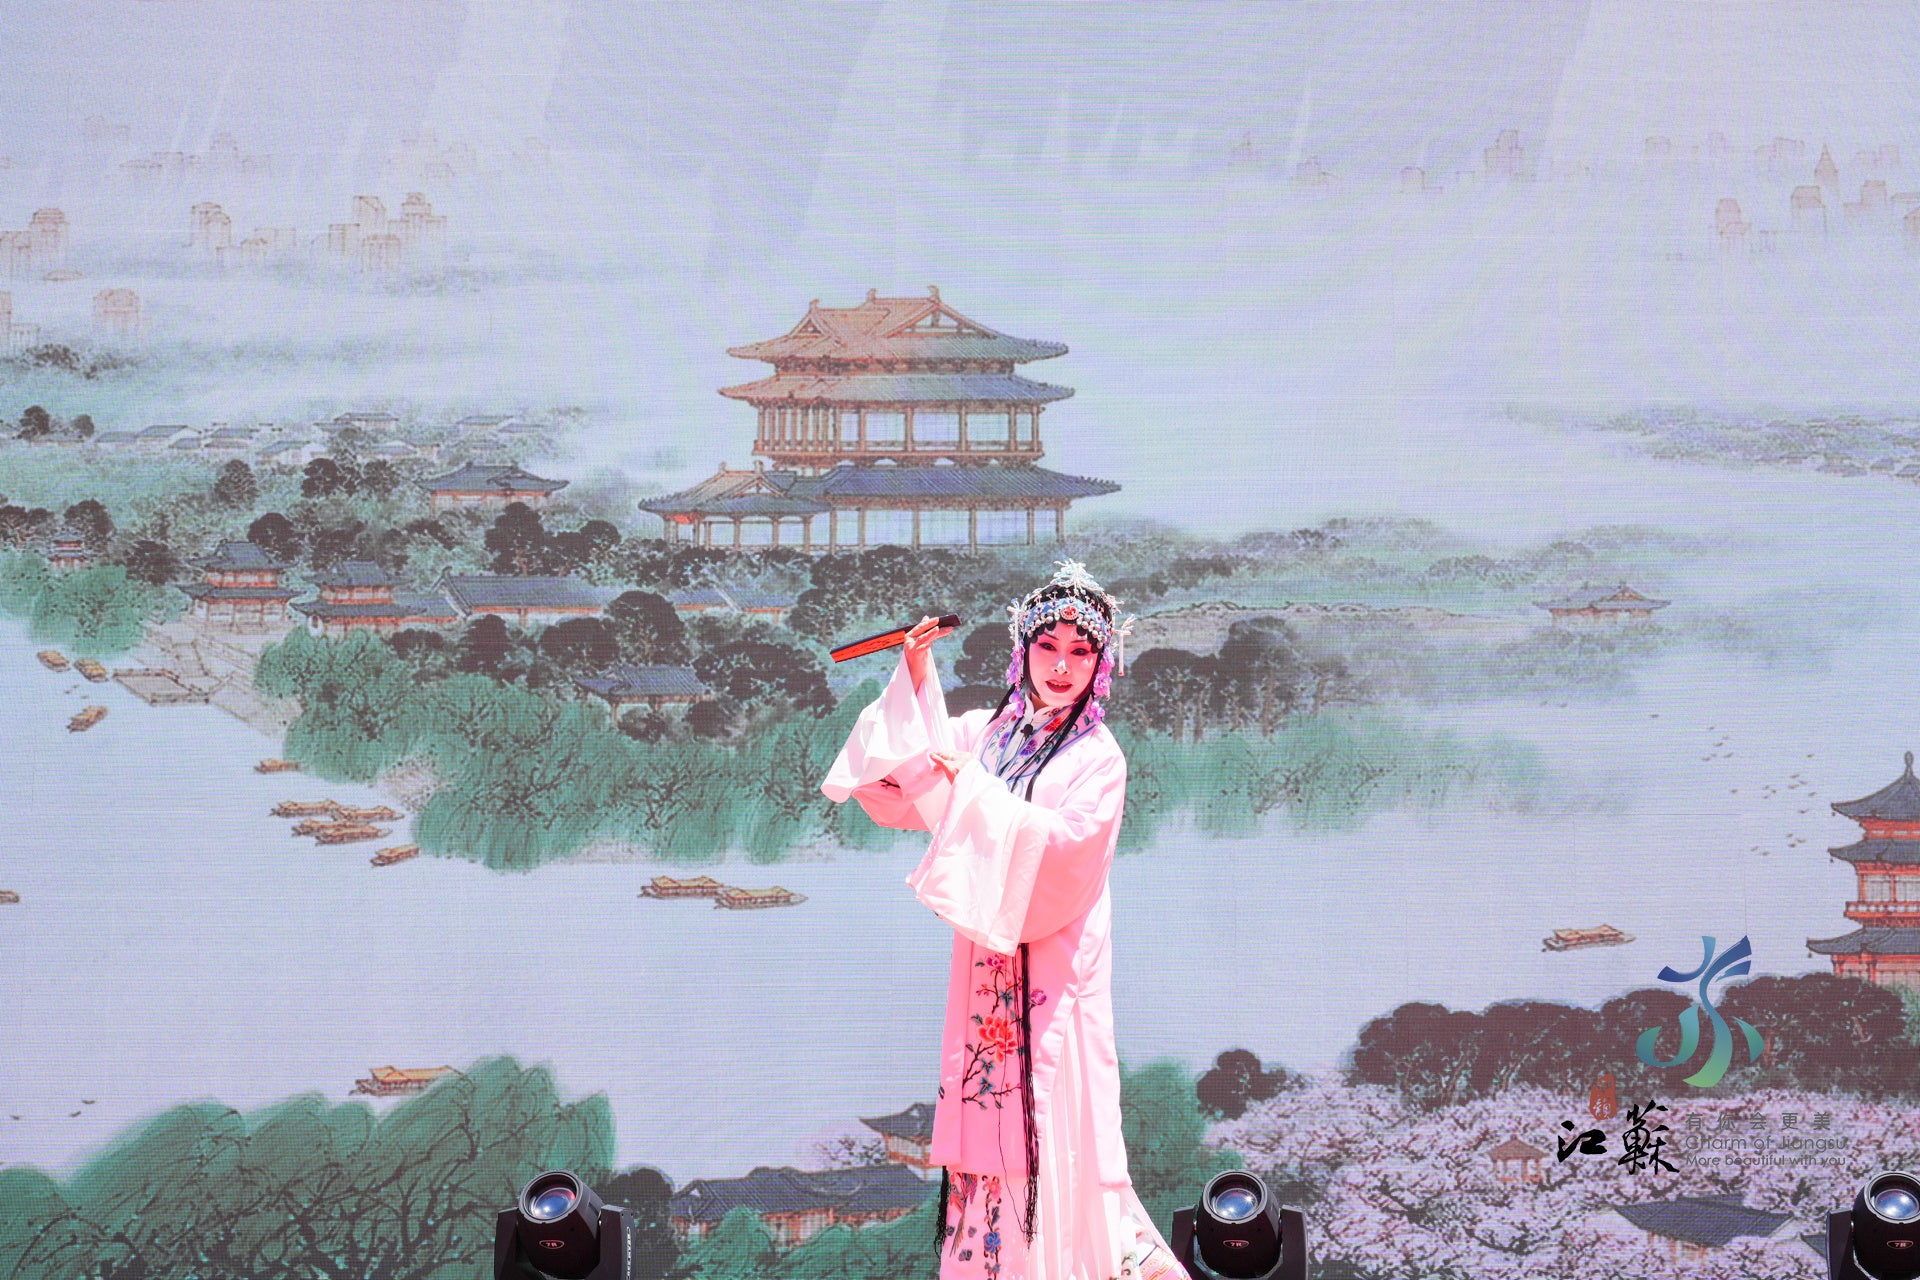 「水の趣 江蘇」文化観光カーニバル、福岡の夜の帷に輝く東方の夢